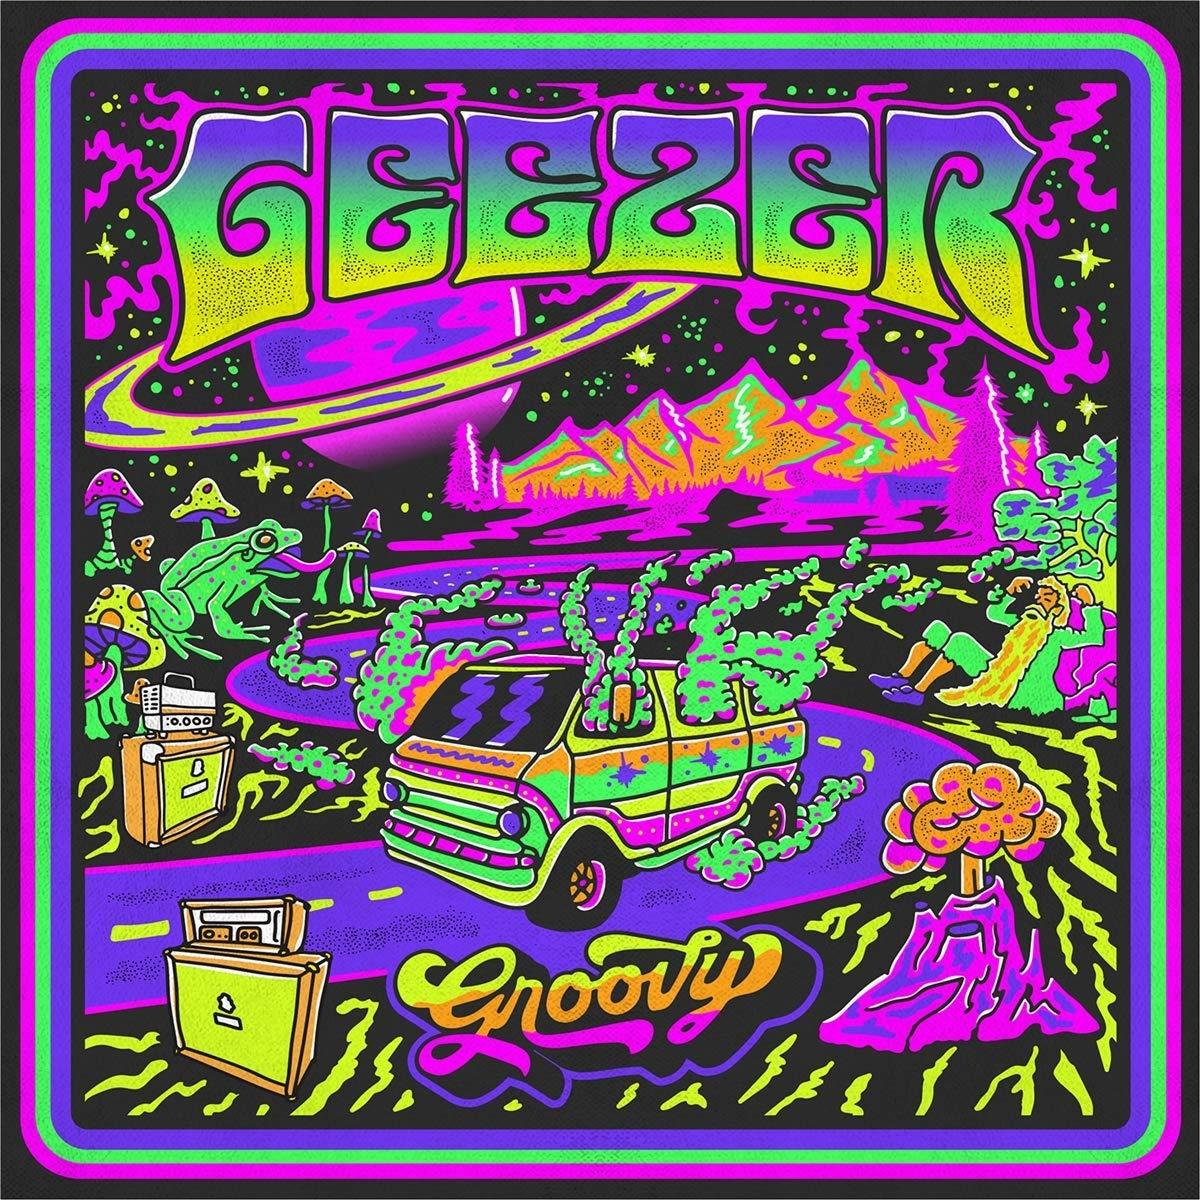 Groovy - Geezer (CD) -